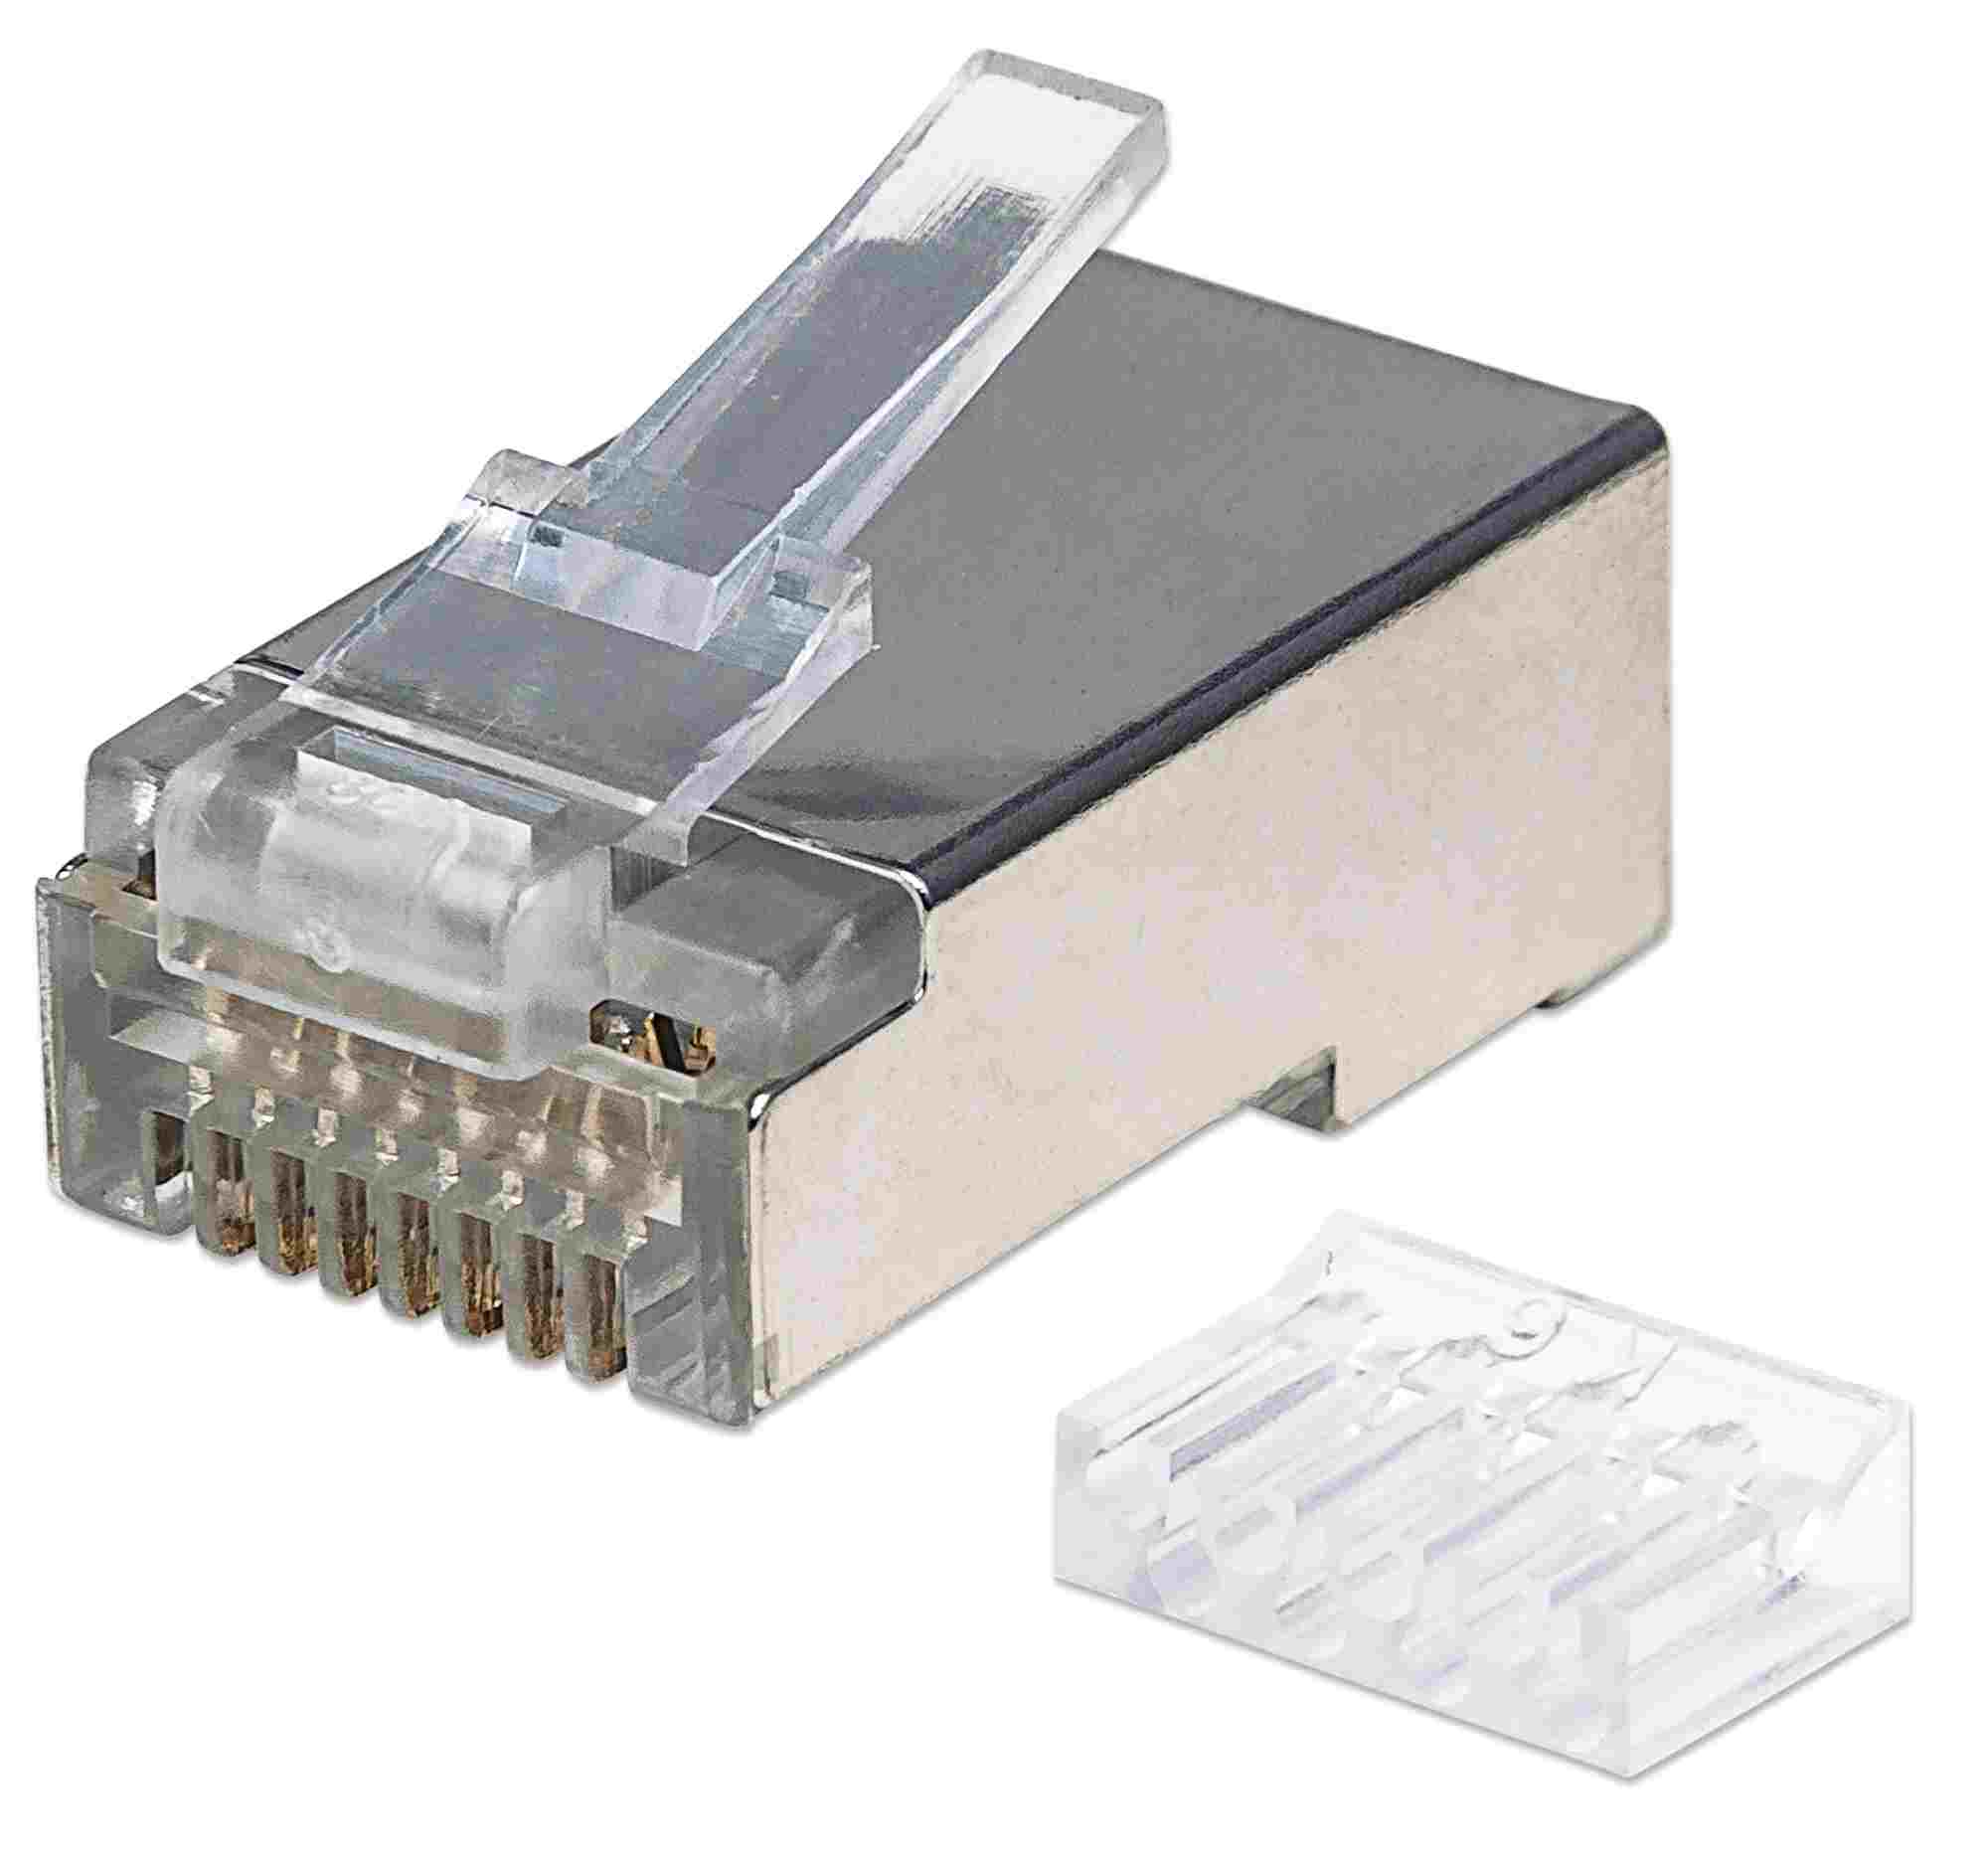 Intellinet konektor RJ45,  Cat6,  tienený STP,  15µ,  drôt,  90 ks v balení0 